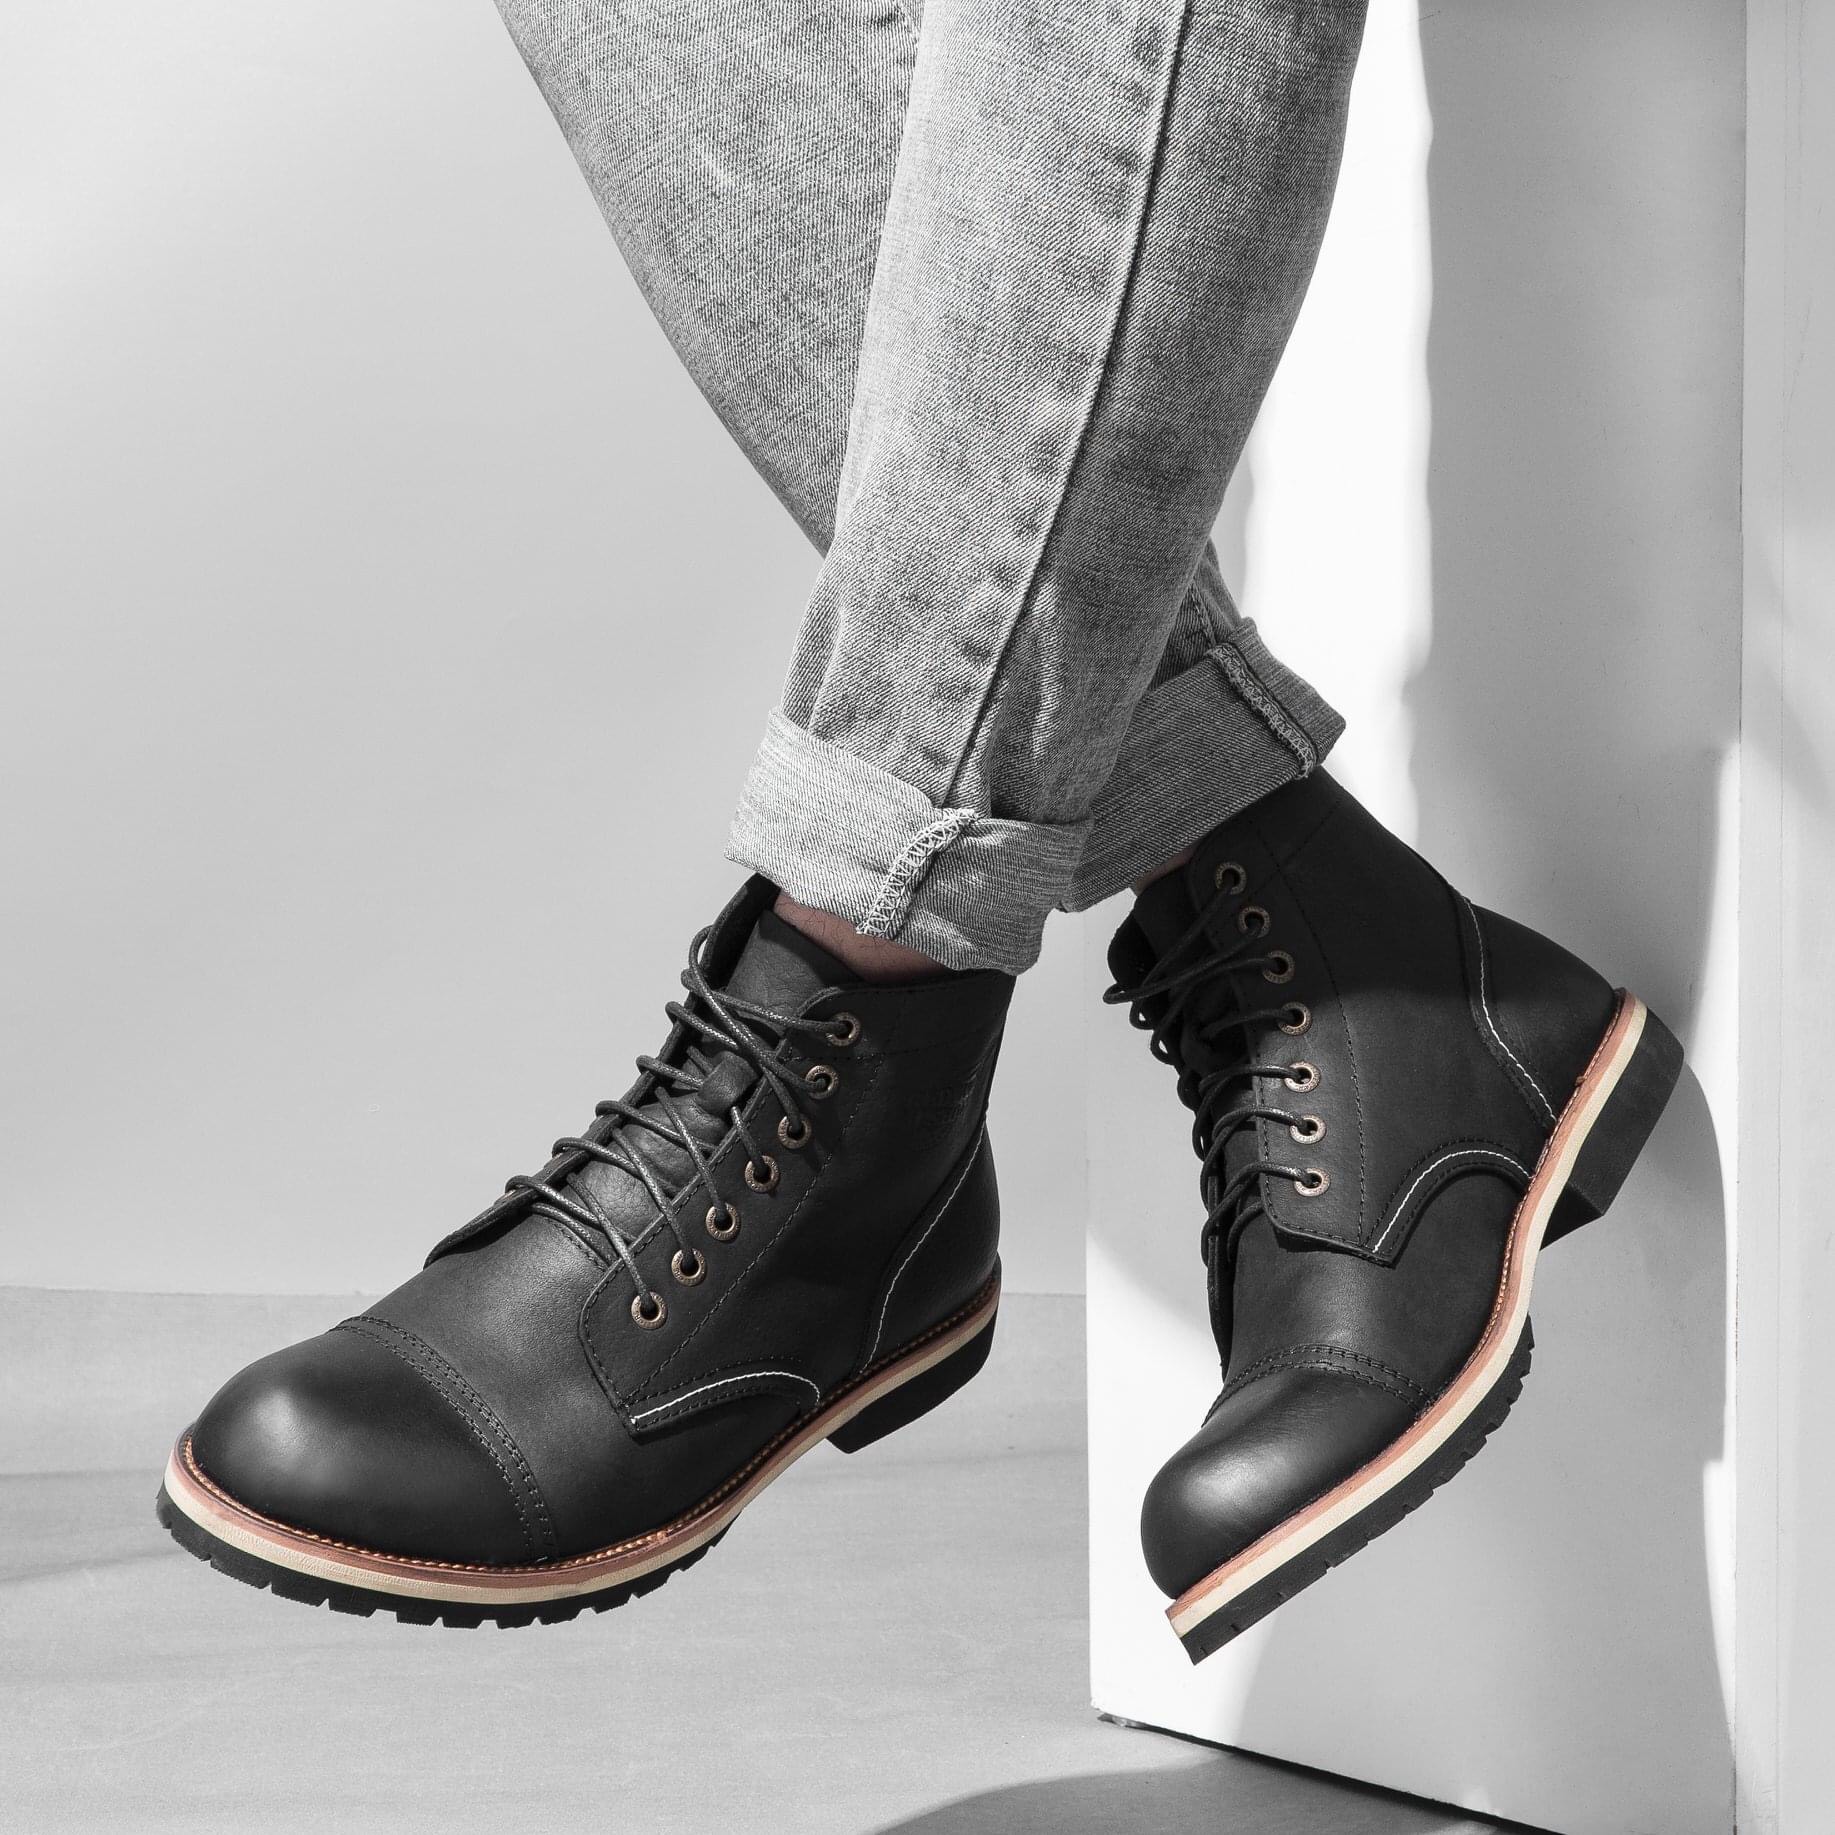 Giày Boot Nam Cao Cổ Buộc Dây Da Bò Thật Nguyên Tấm HN678Black - (Tặng Xi/Vớ/Lót Giày